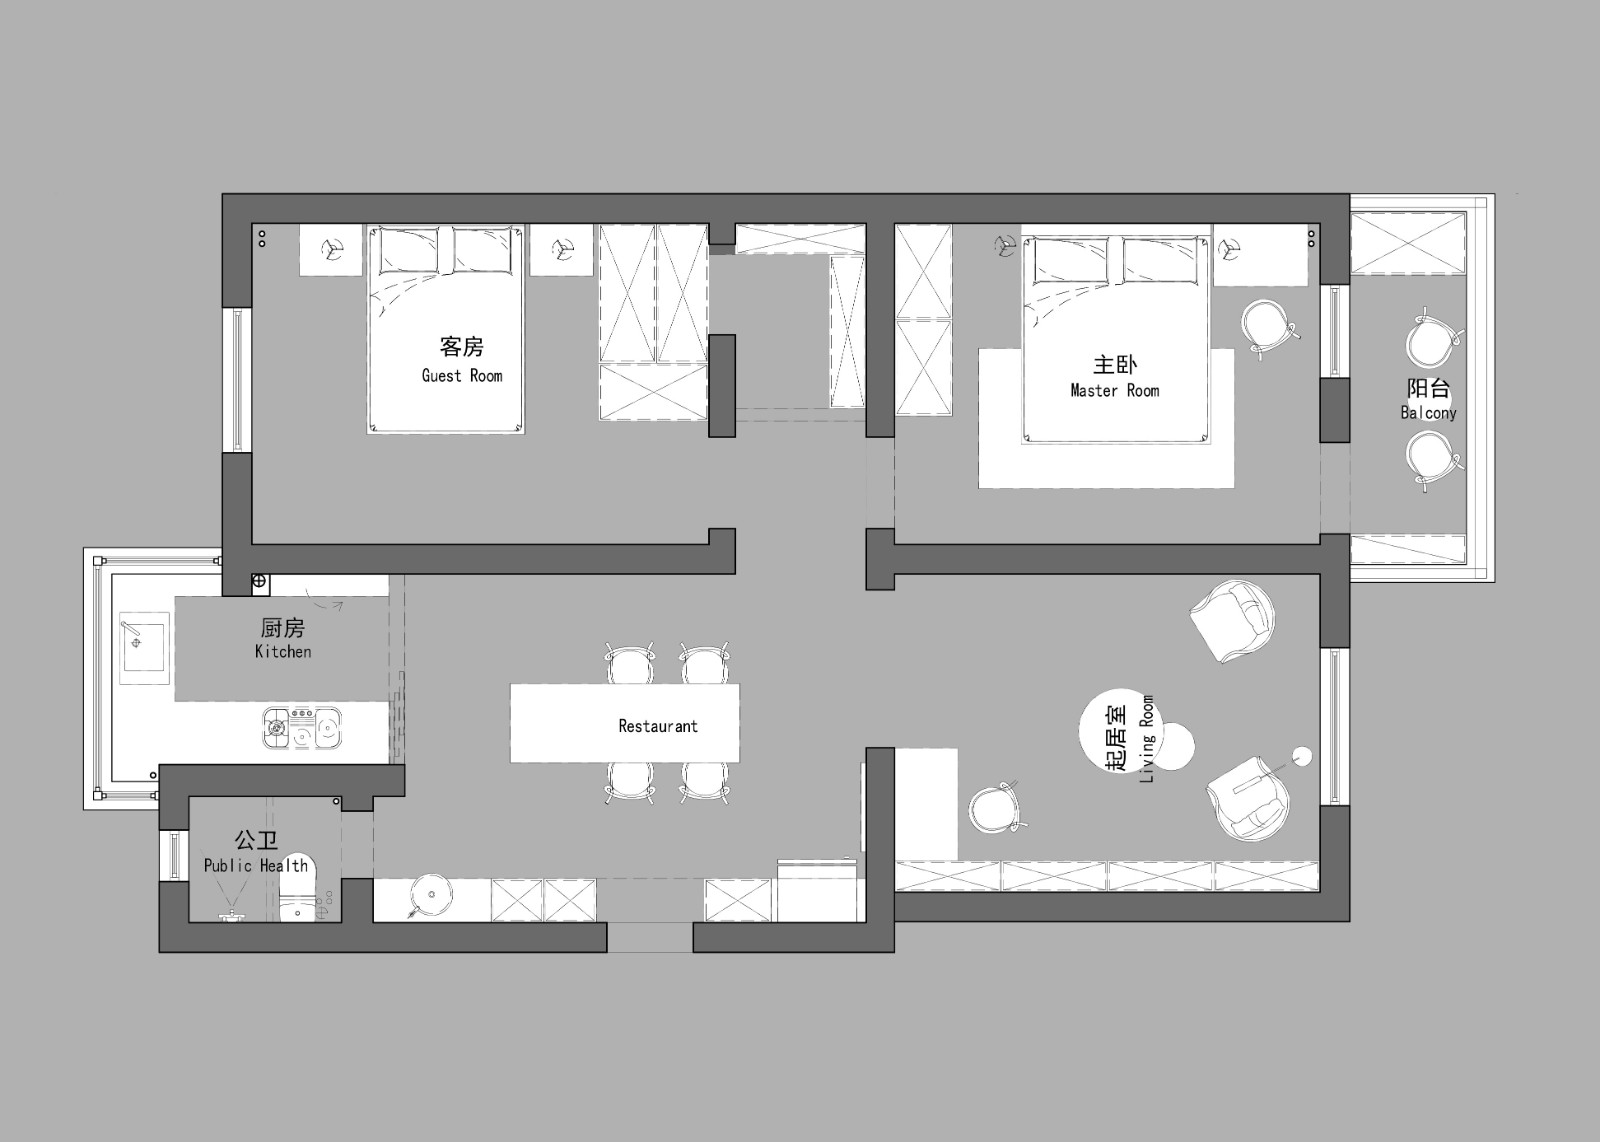 100现代三房装修效果图,简单的线条 展现细腻张力装修案例效果图-美广网